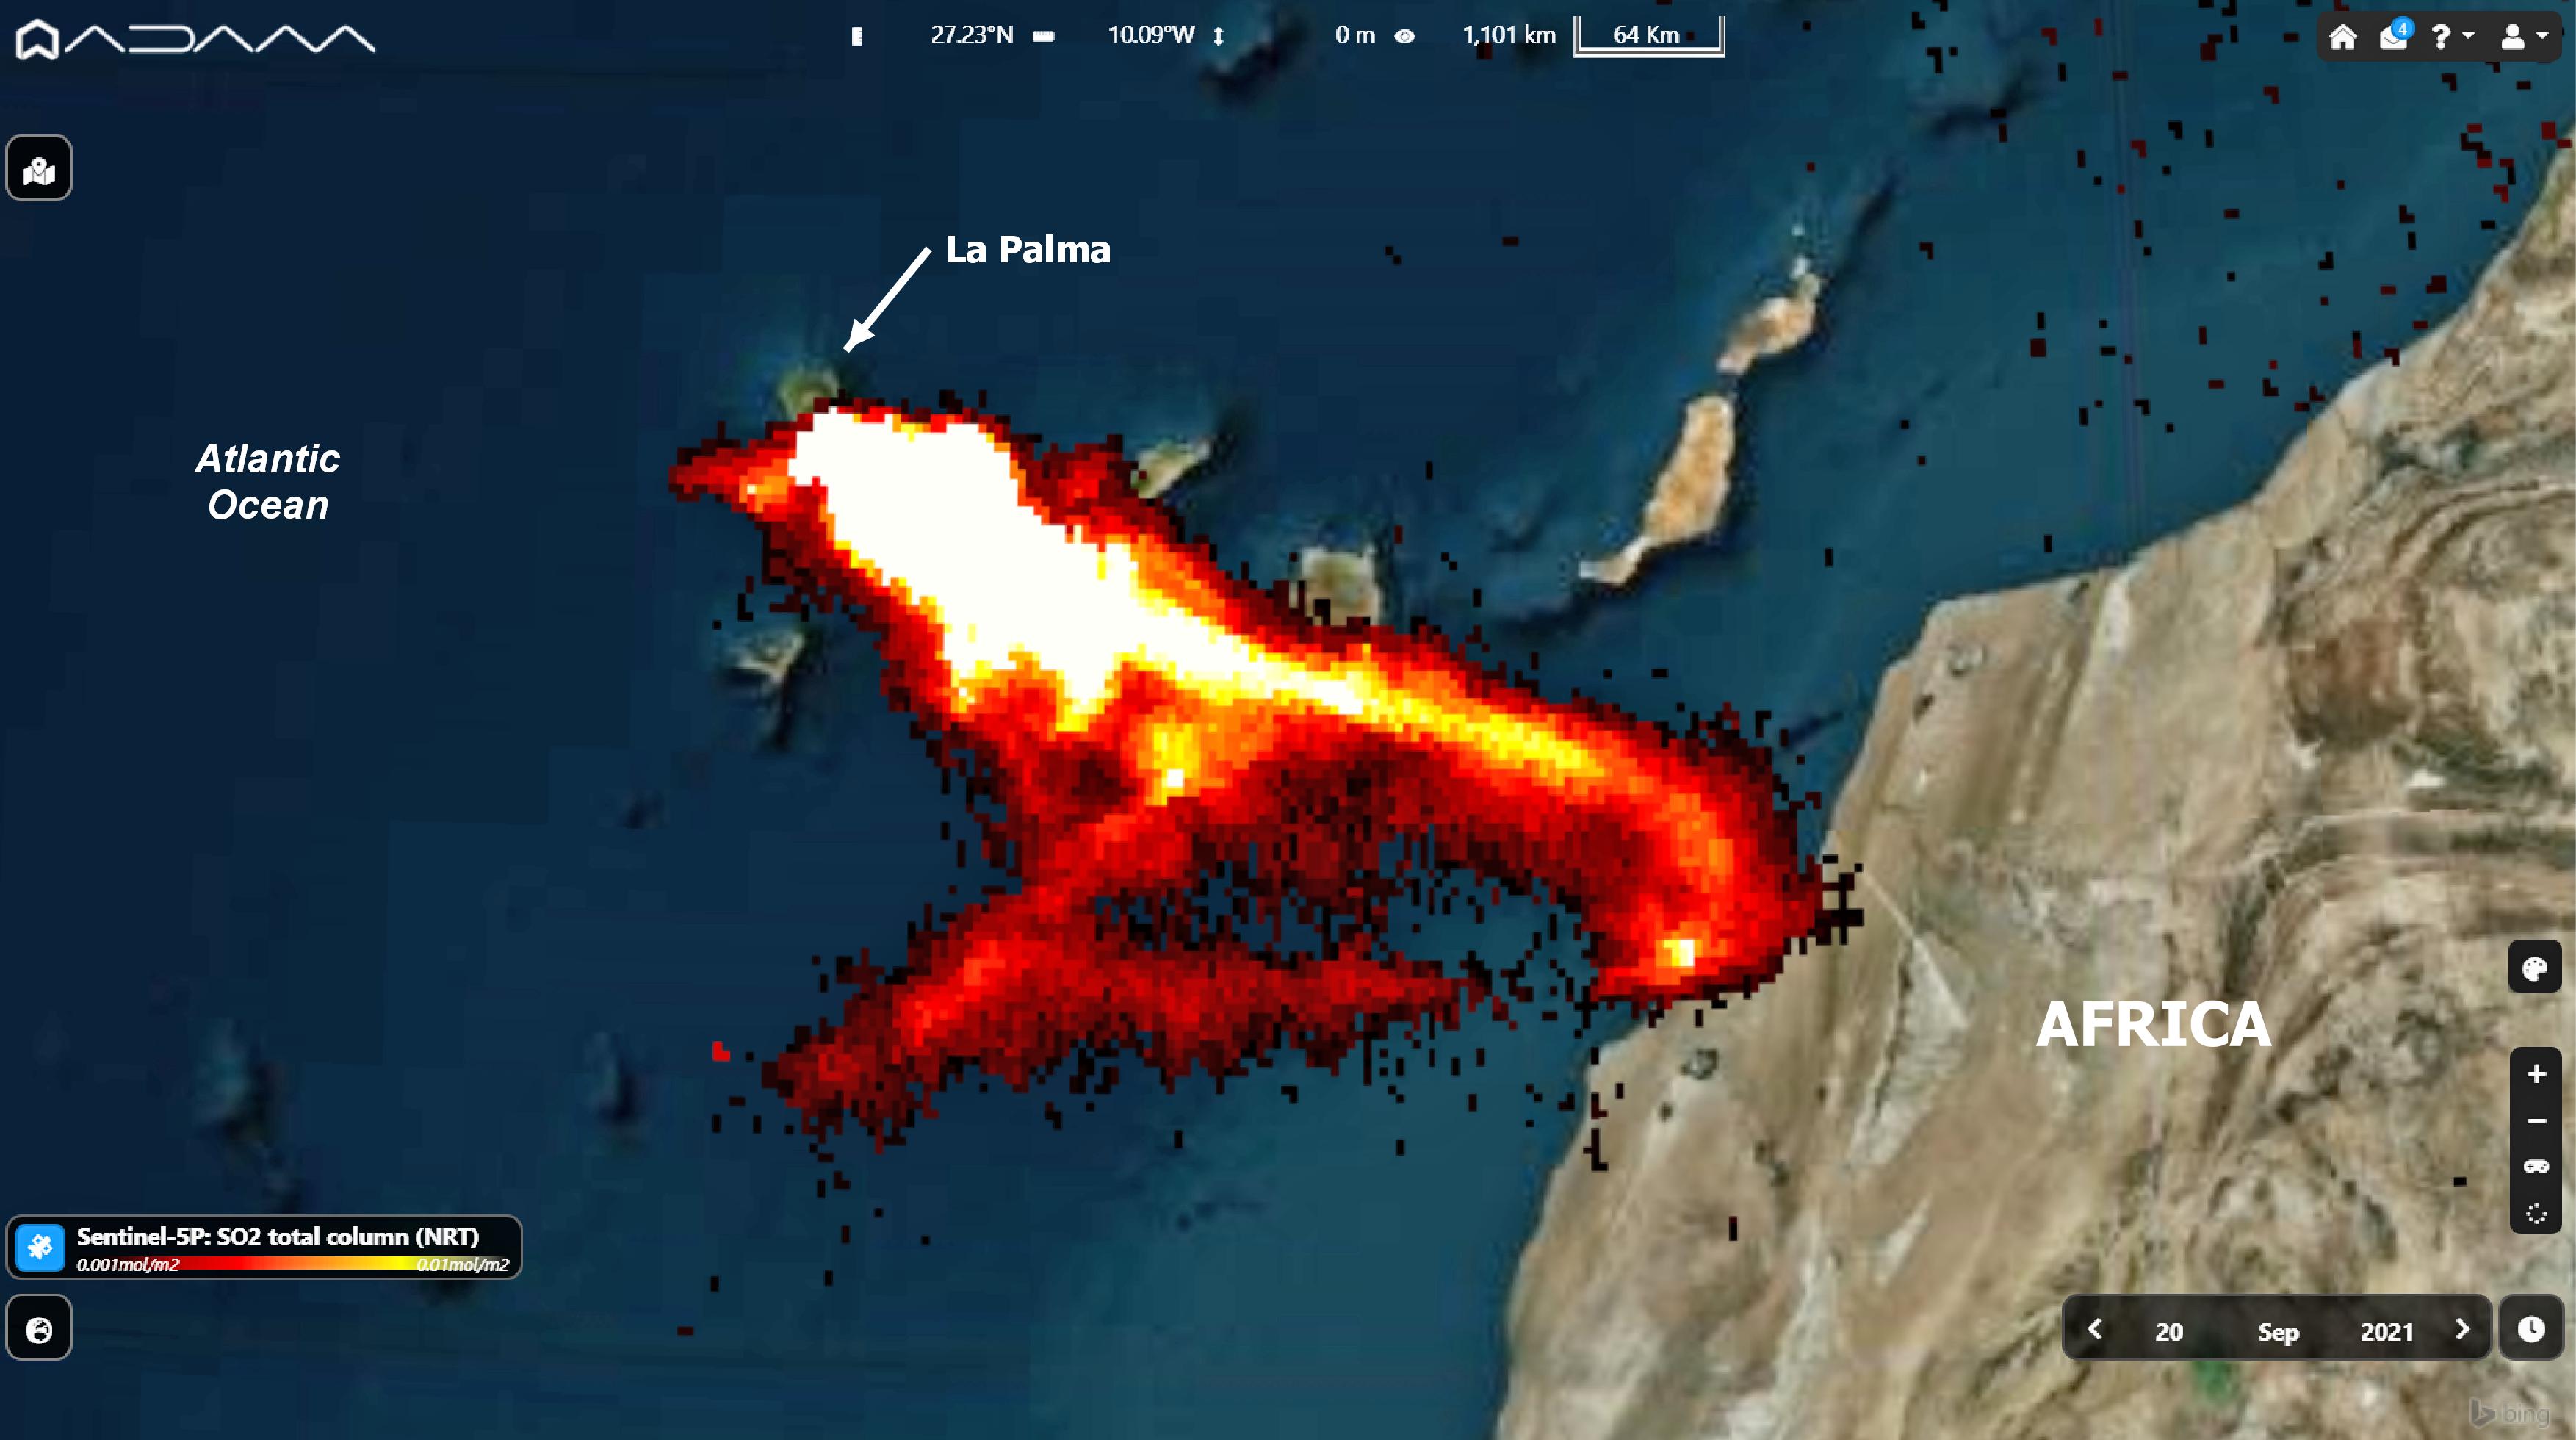 El volcán de La Palma ha emitido una gran cantidad de dióxido de azufre que llegará a Italia, Túnez y Libia